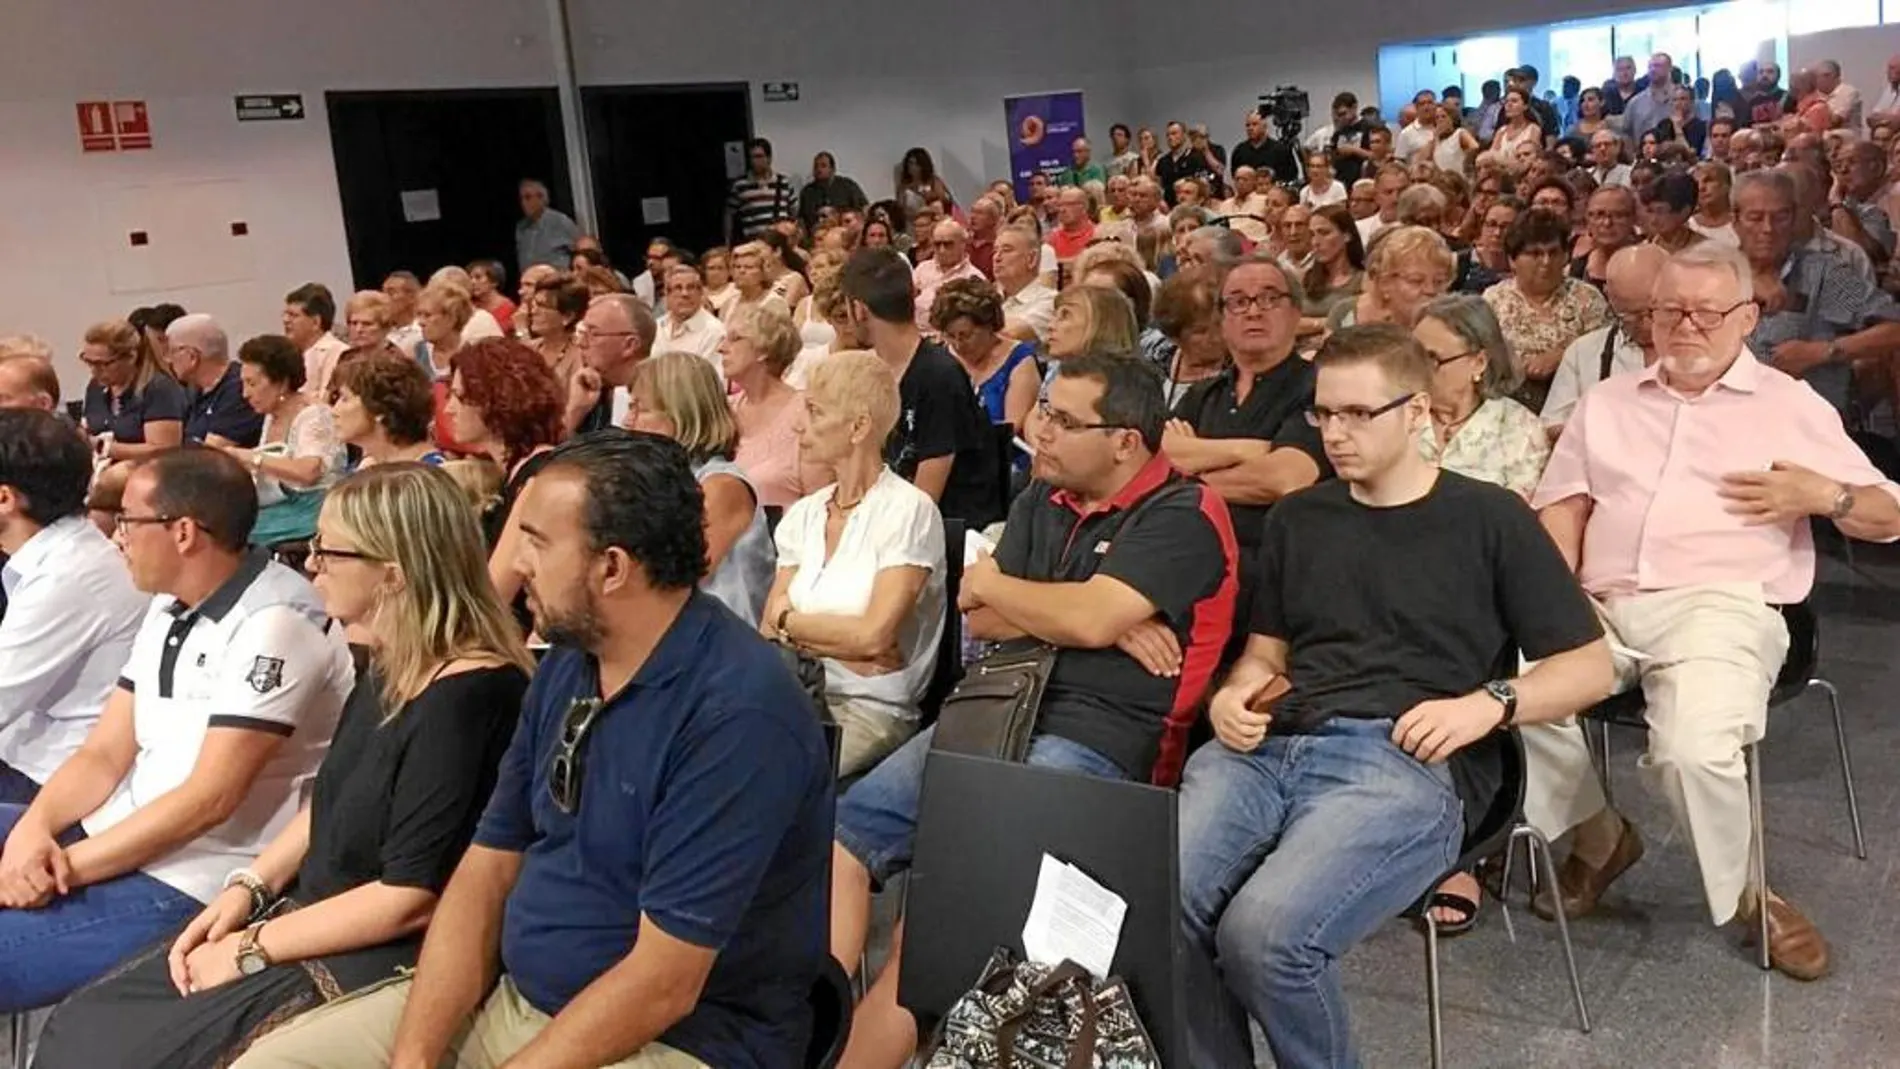 Sociedad Civil Catalana reunió el jueves a 200 vecinos en Castelldefels en un acto para protestar contra la adhesión de este municipio a la AMI